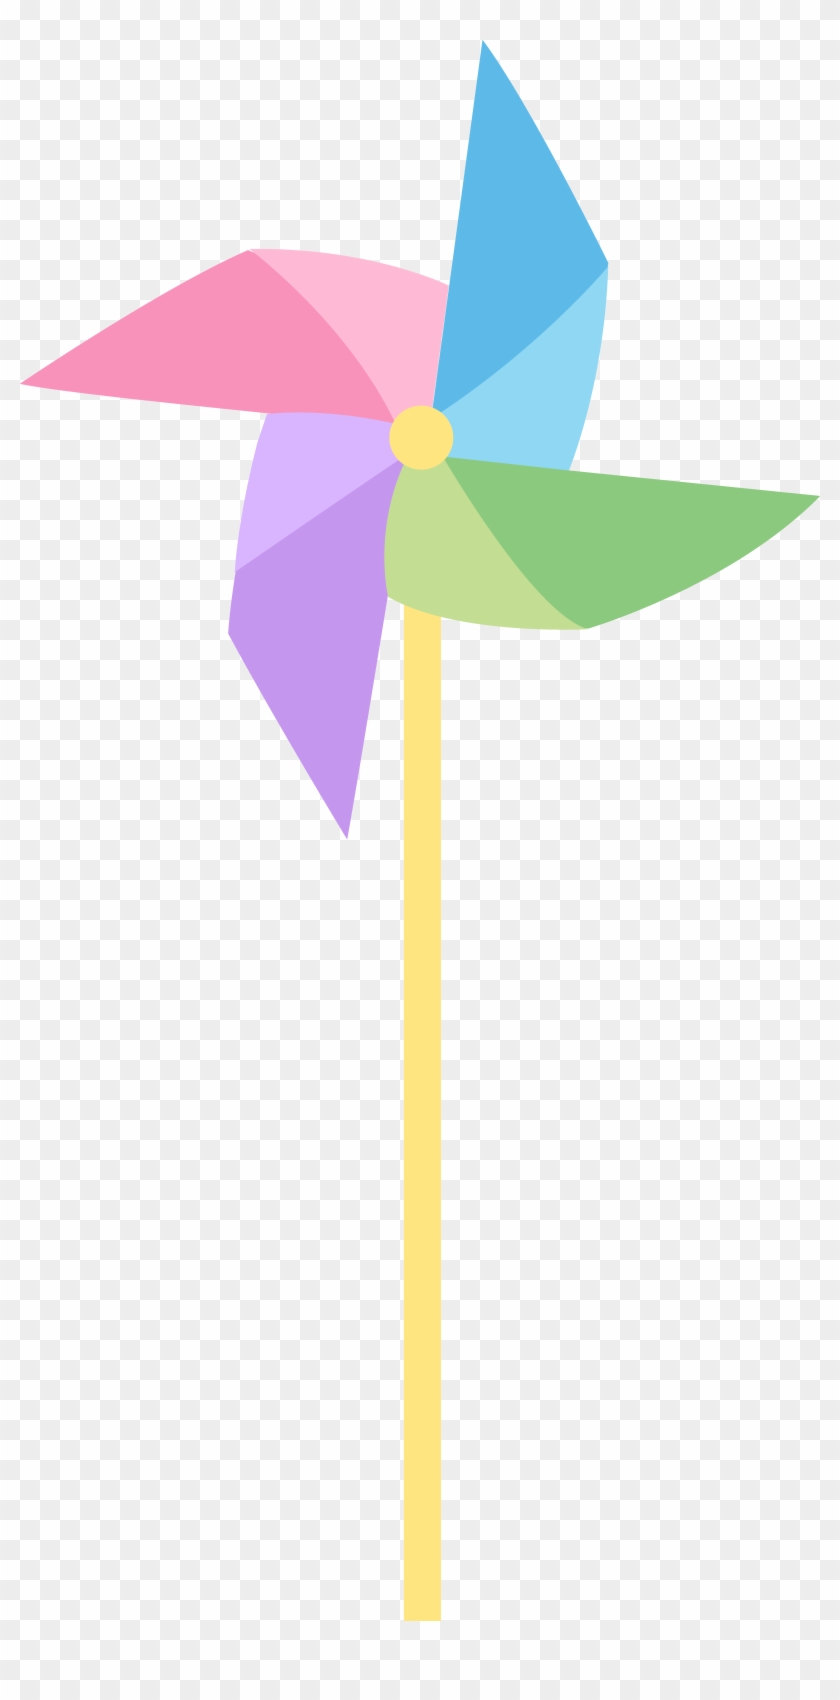 Pastel Colored Pinwheel Free Clip Art Toy - Pinwheel Clipart Free - Png Download #2633956